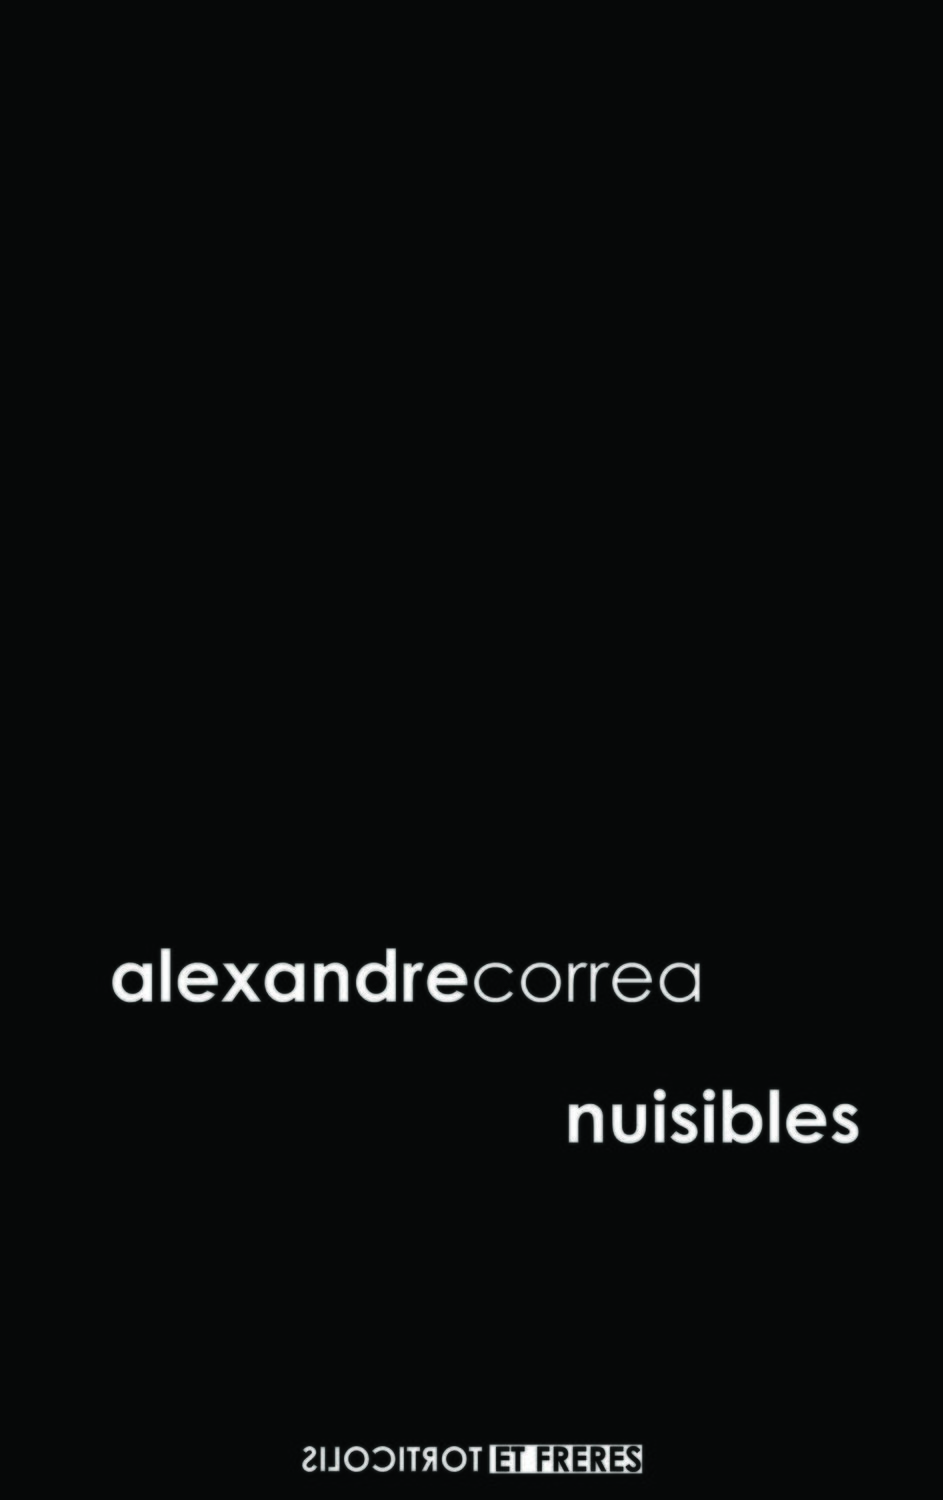 Alexandre Correa, "Nuisibles